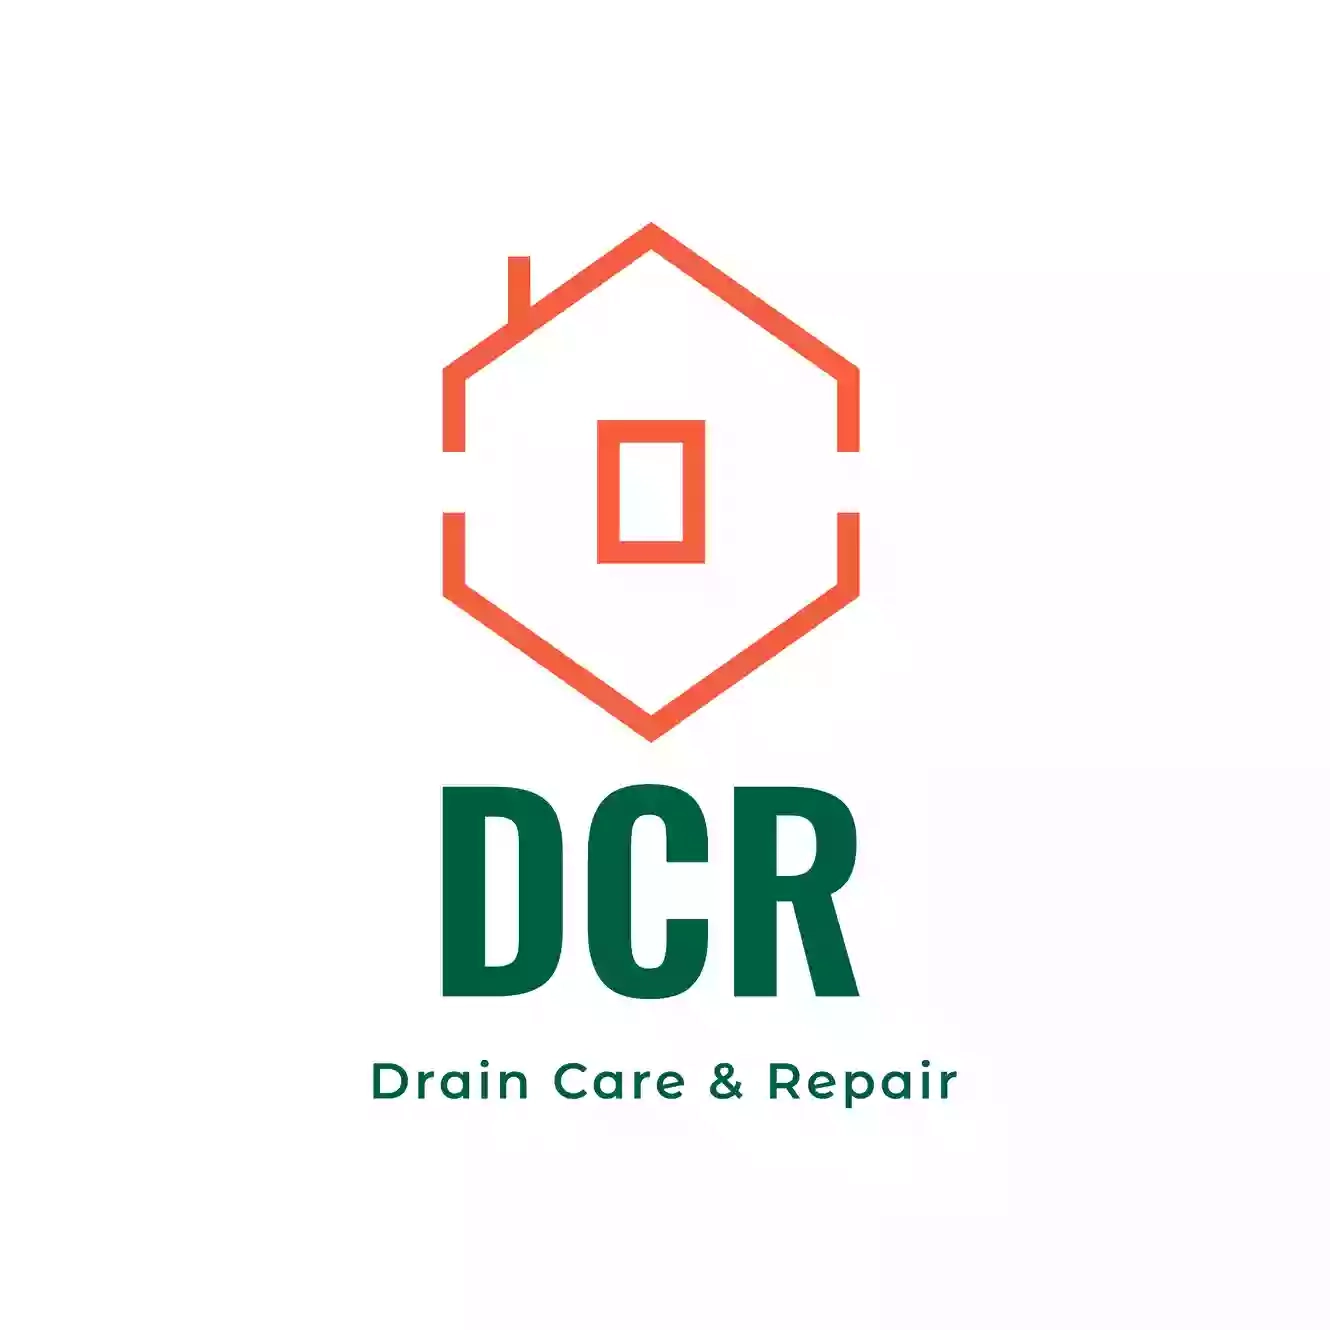 Drain Care and Repair